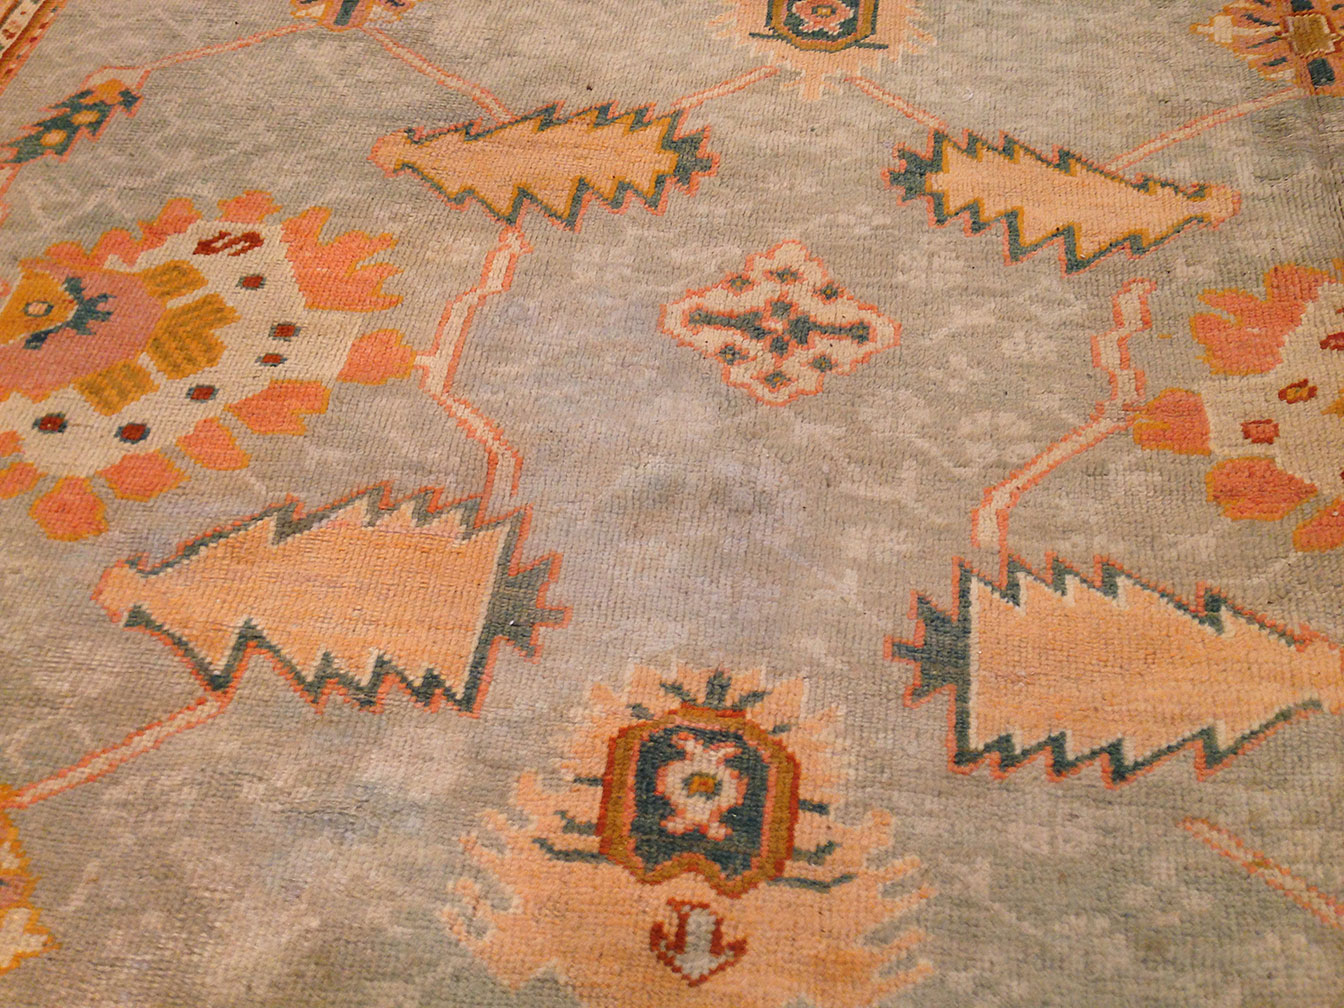 Antique oushak Carpet - # 9831